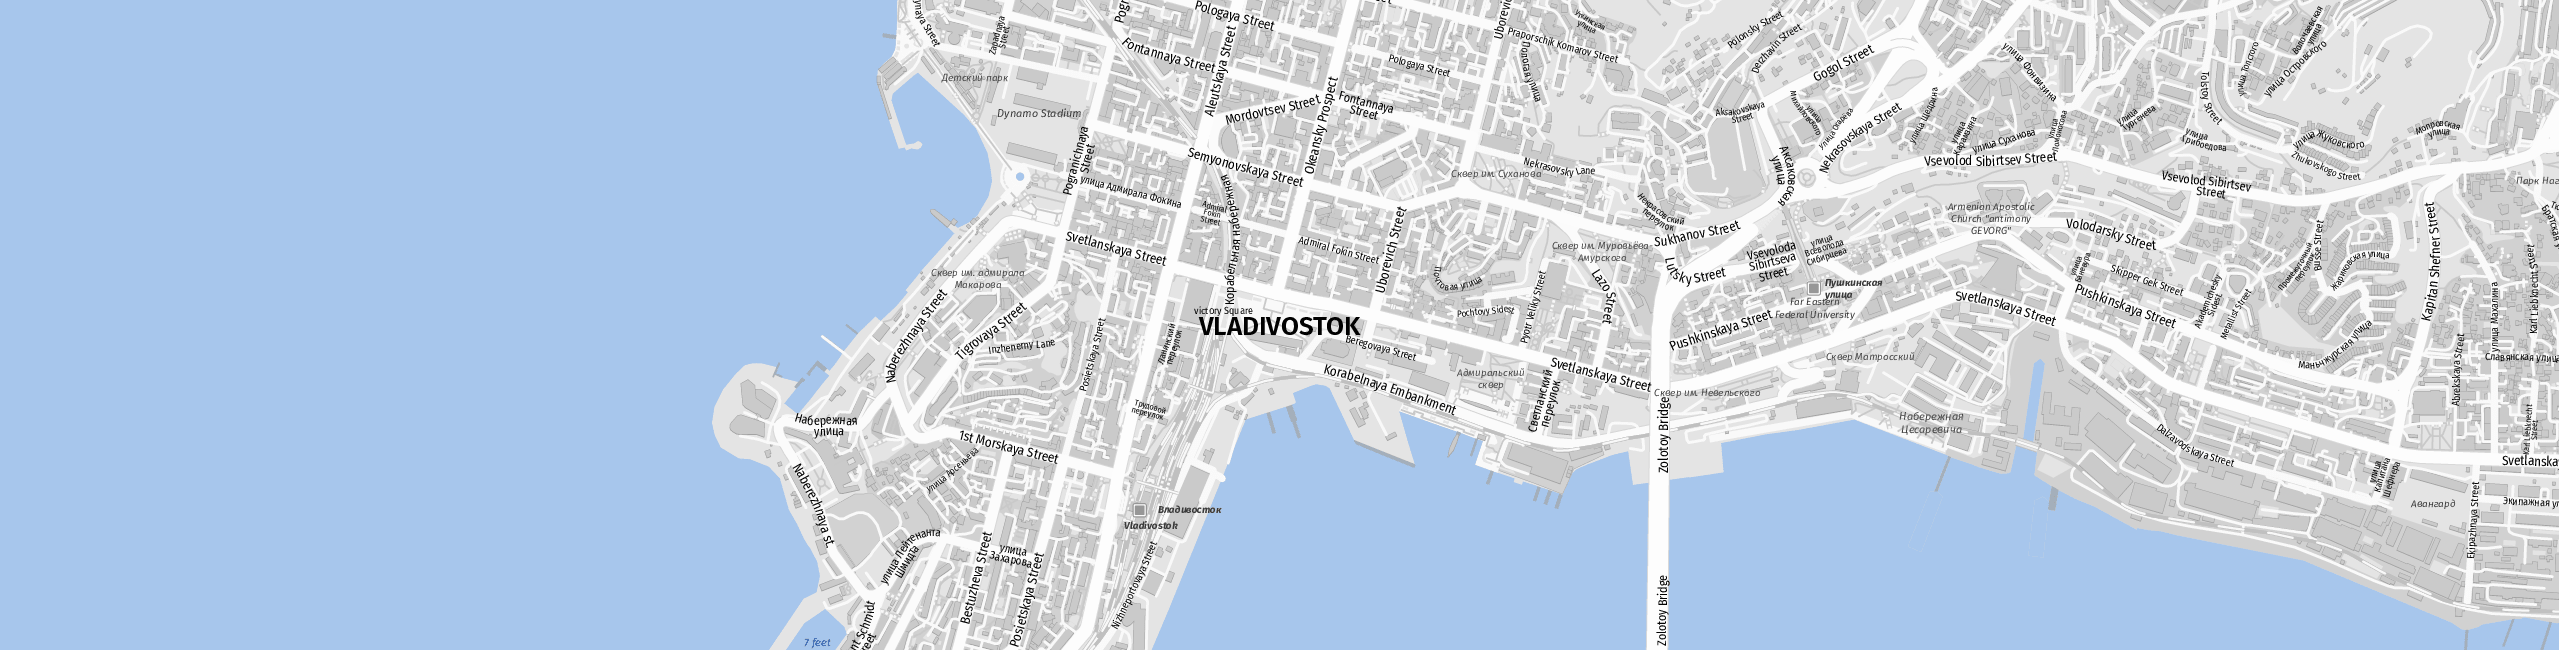 Stadtplan Vladivostok zum Downloaden.